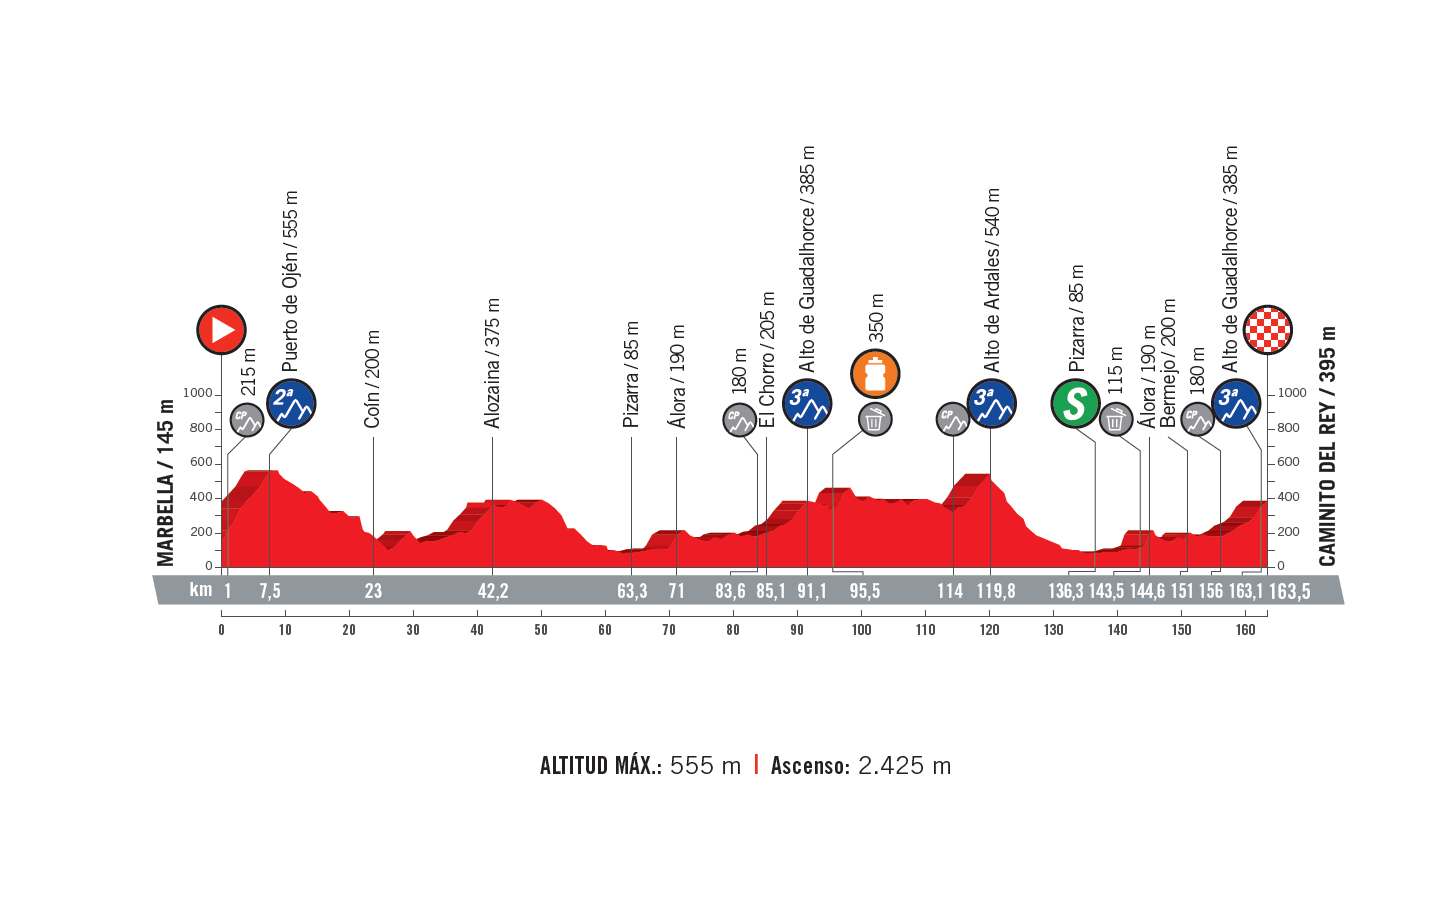 profil 2. etapu Vuelta a Espana 2018